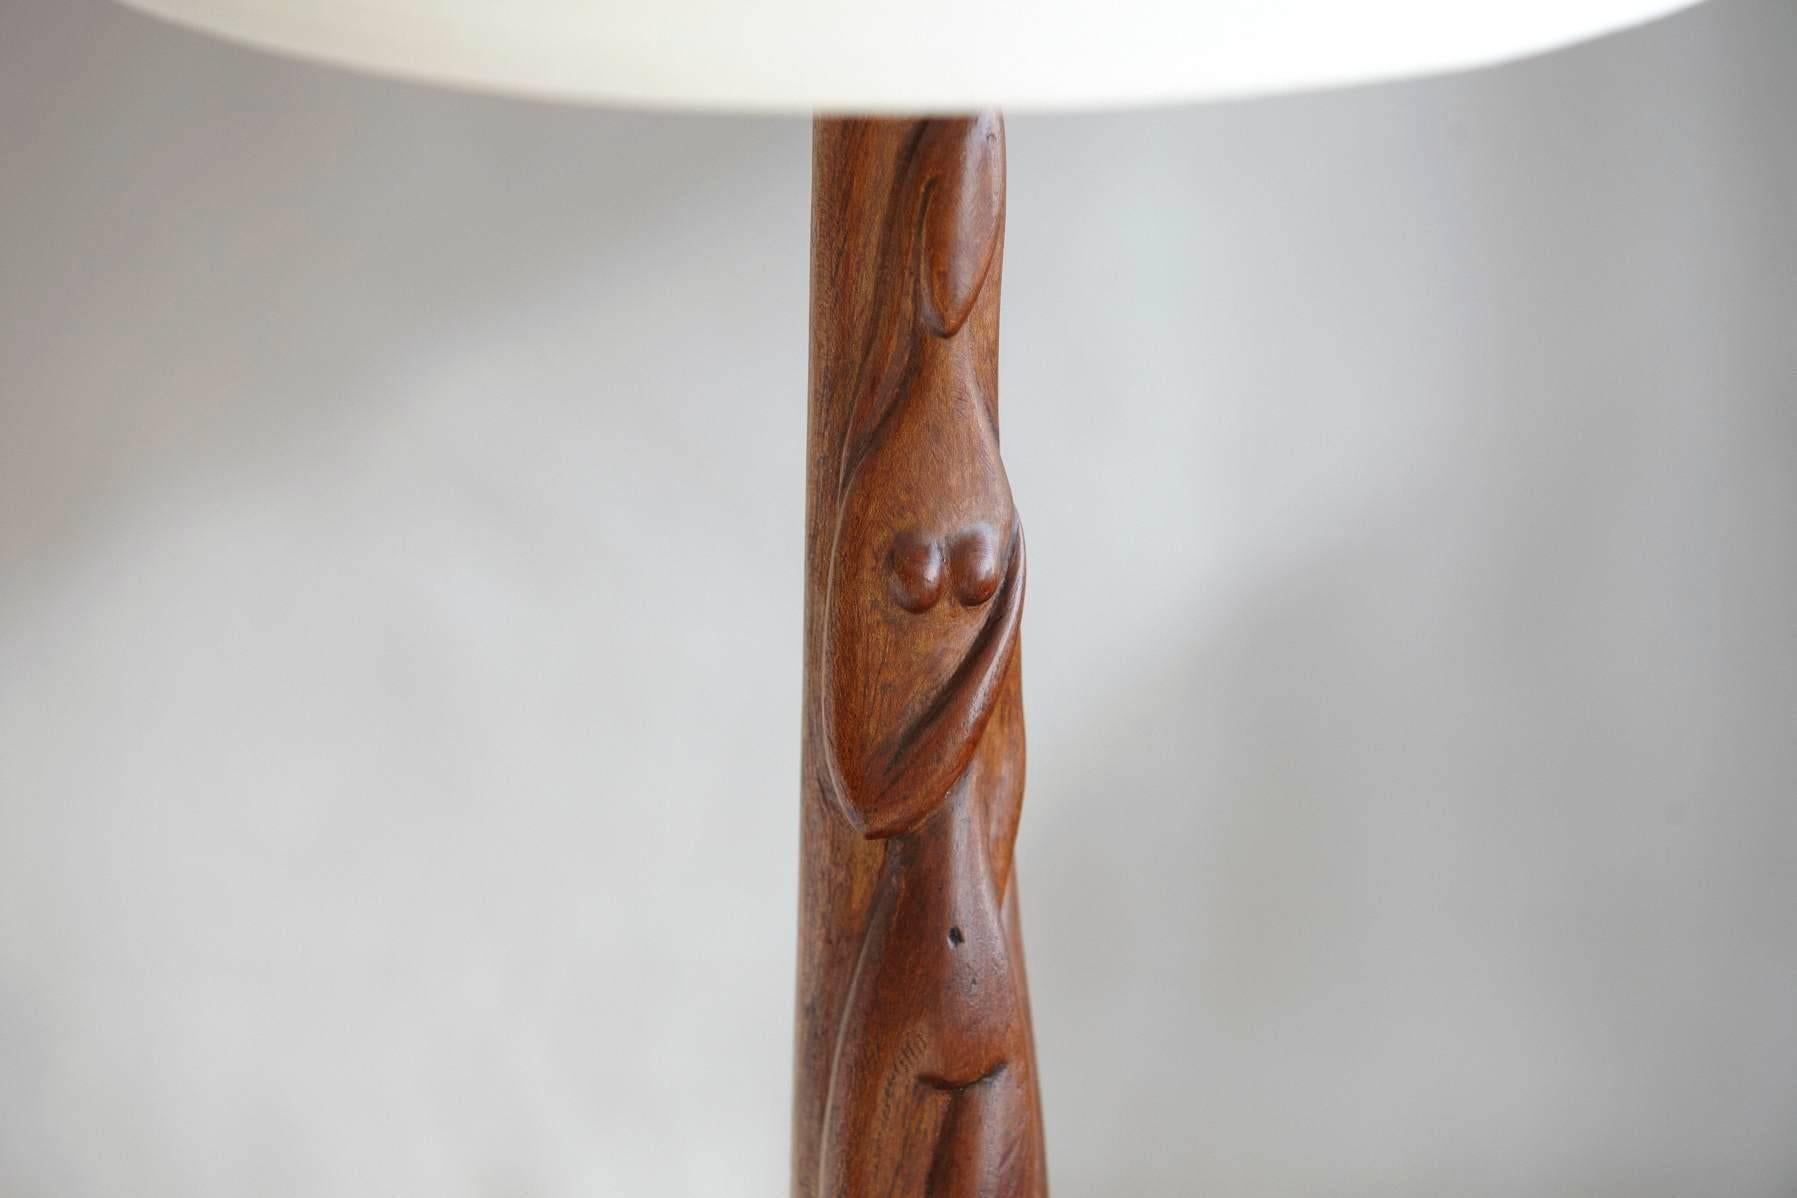 Magnifique lampe de table en bois sculpté représentant une femme nue, sculptée à la main avec base en bois noir teinté, par Nicholas (Nimo) Mocharniuk (Russe/Américain 1917-1993), signée au dos NIMO.
La tige sculptée est en excellent état, très